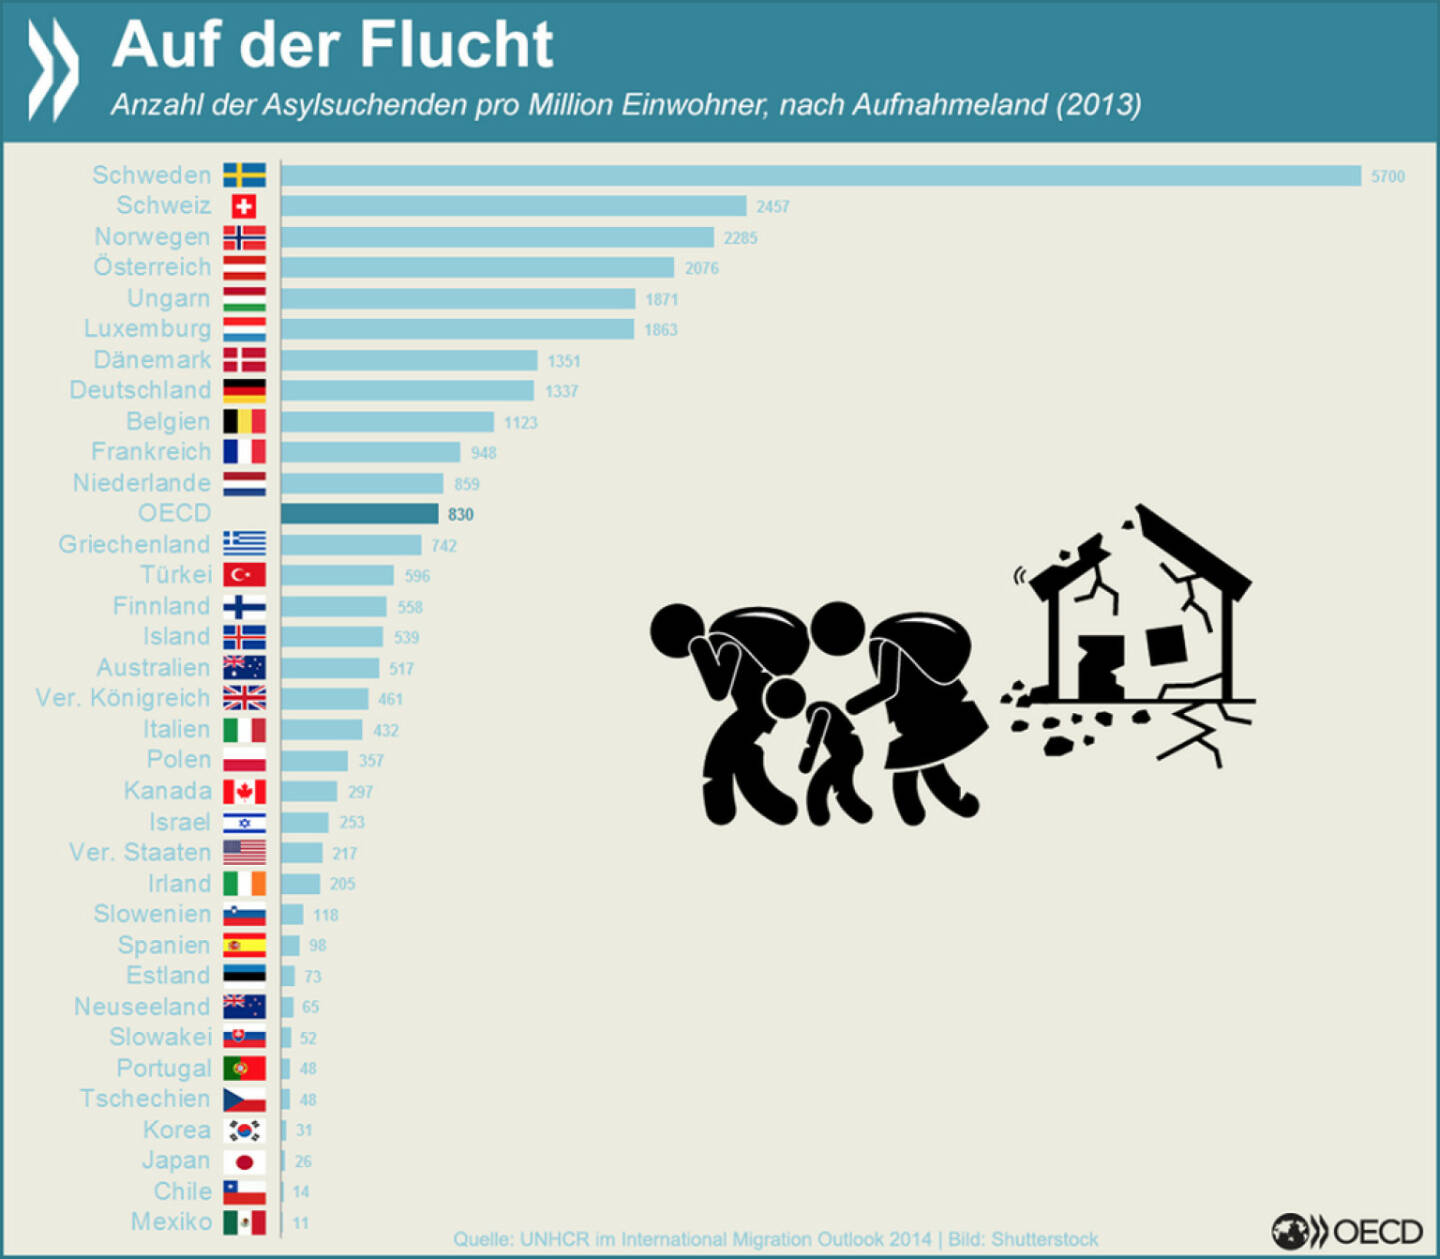 Auf der Flucht: Gemessen an der Einwohnerzahl nimmt Schweden in der OECD mit Abstand die meisten Asylsuchenden auf. 2013 waren es 5700 pro Million Bewohner. An zweiter Stelle steht die Schweiz.
Mehr Informationen über Migrationsströme findet Ihr unter: http://bit.ly/1yyPFiQ (S.27)